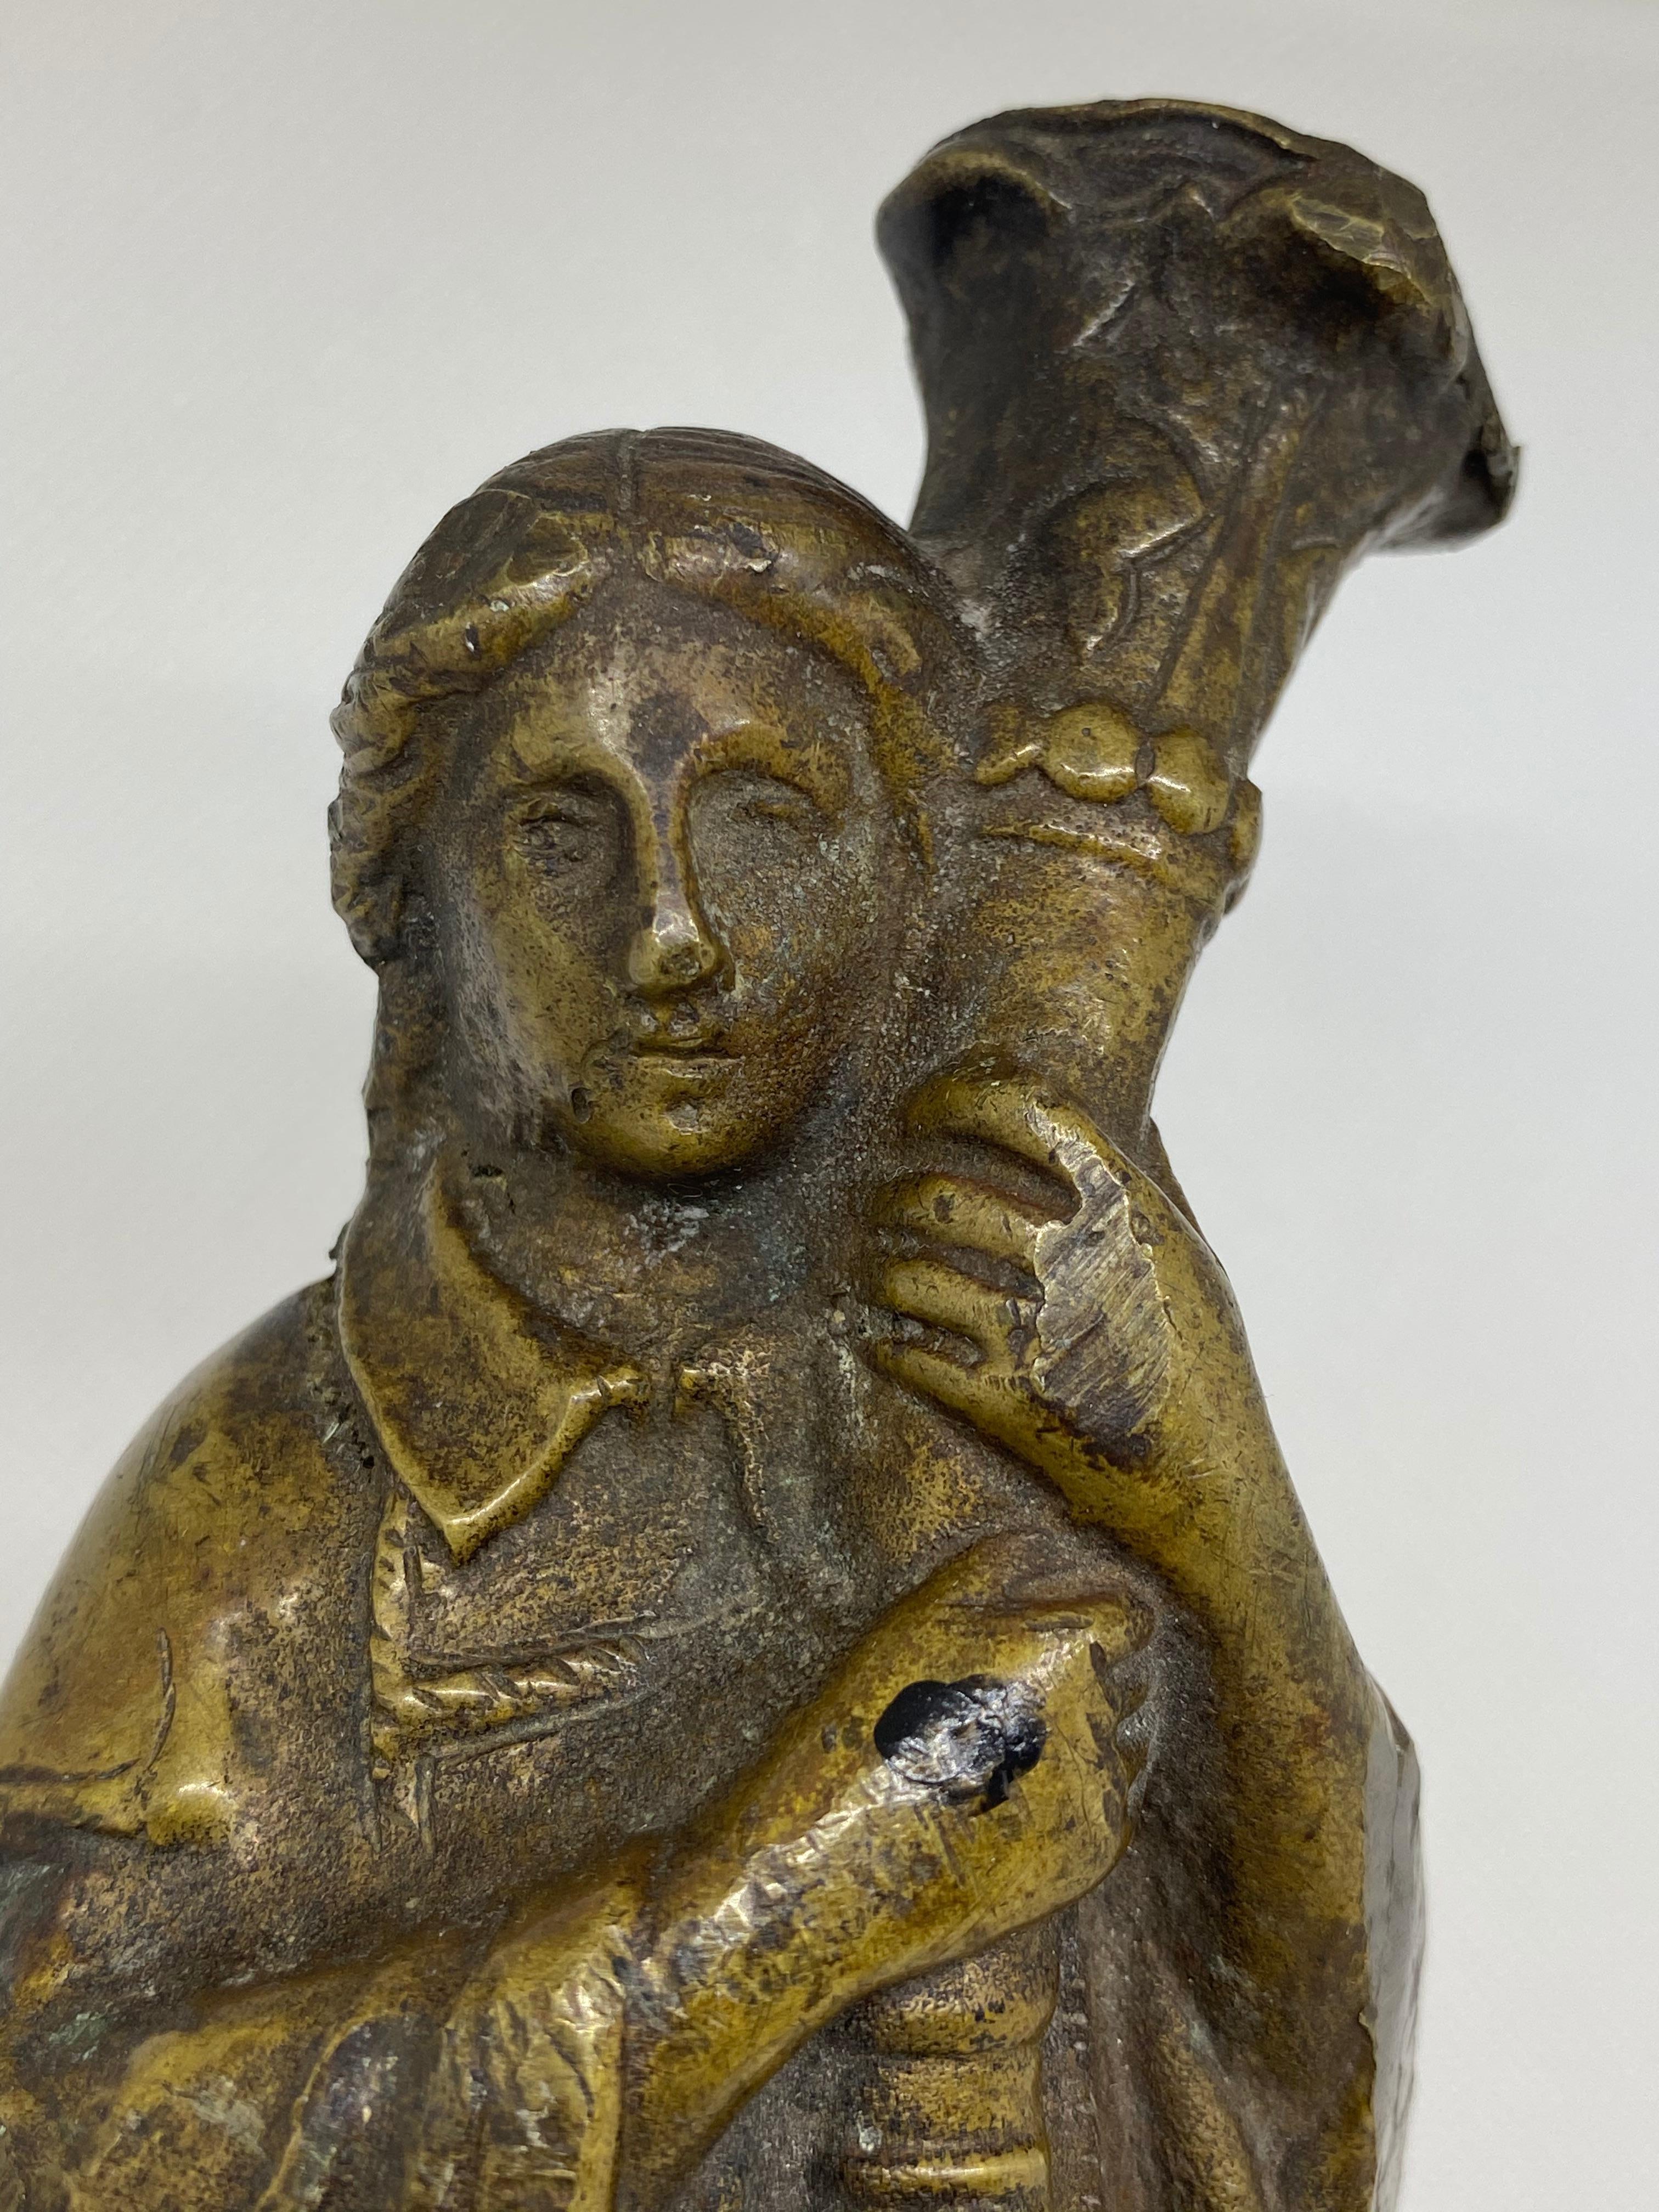 Gegossene Bronzefigur eines Priesters, der einen Krummstab in der Hand hält.

Montiert auf einem modernen gedrechselten Sockel aus ebonisiertem Holz.

Die Bronzefigur ist 9 1/2